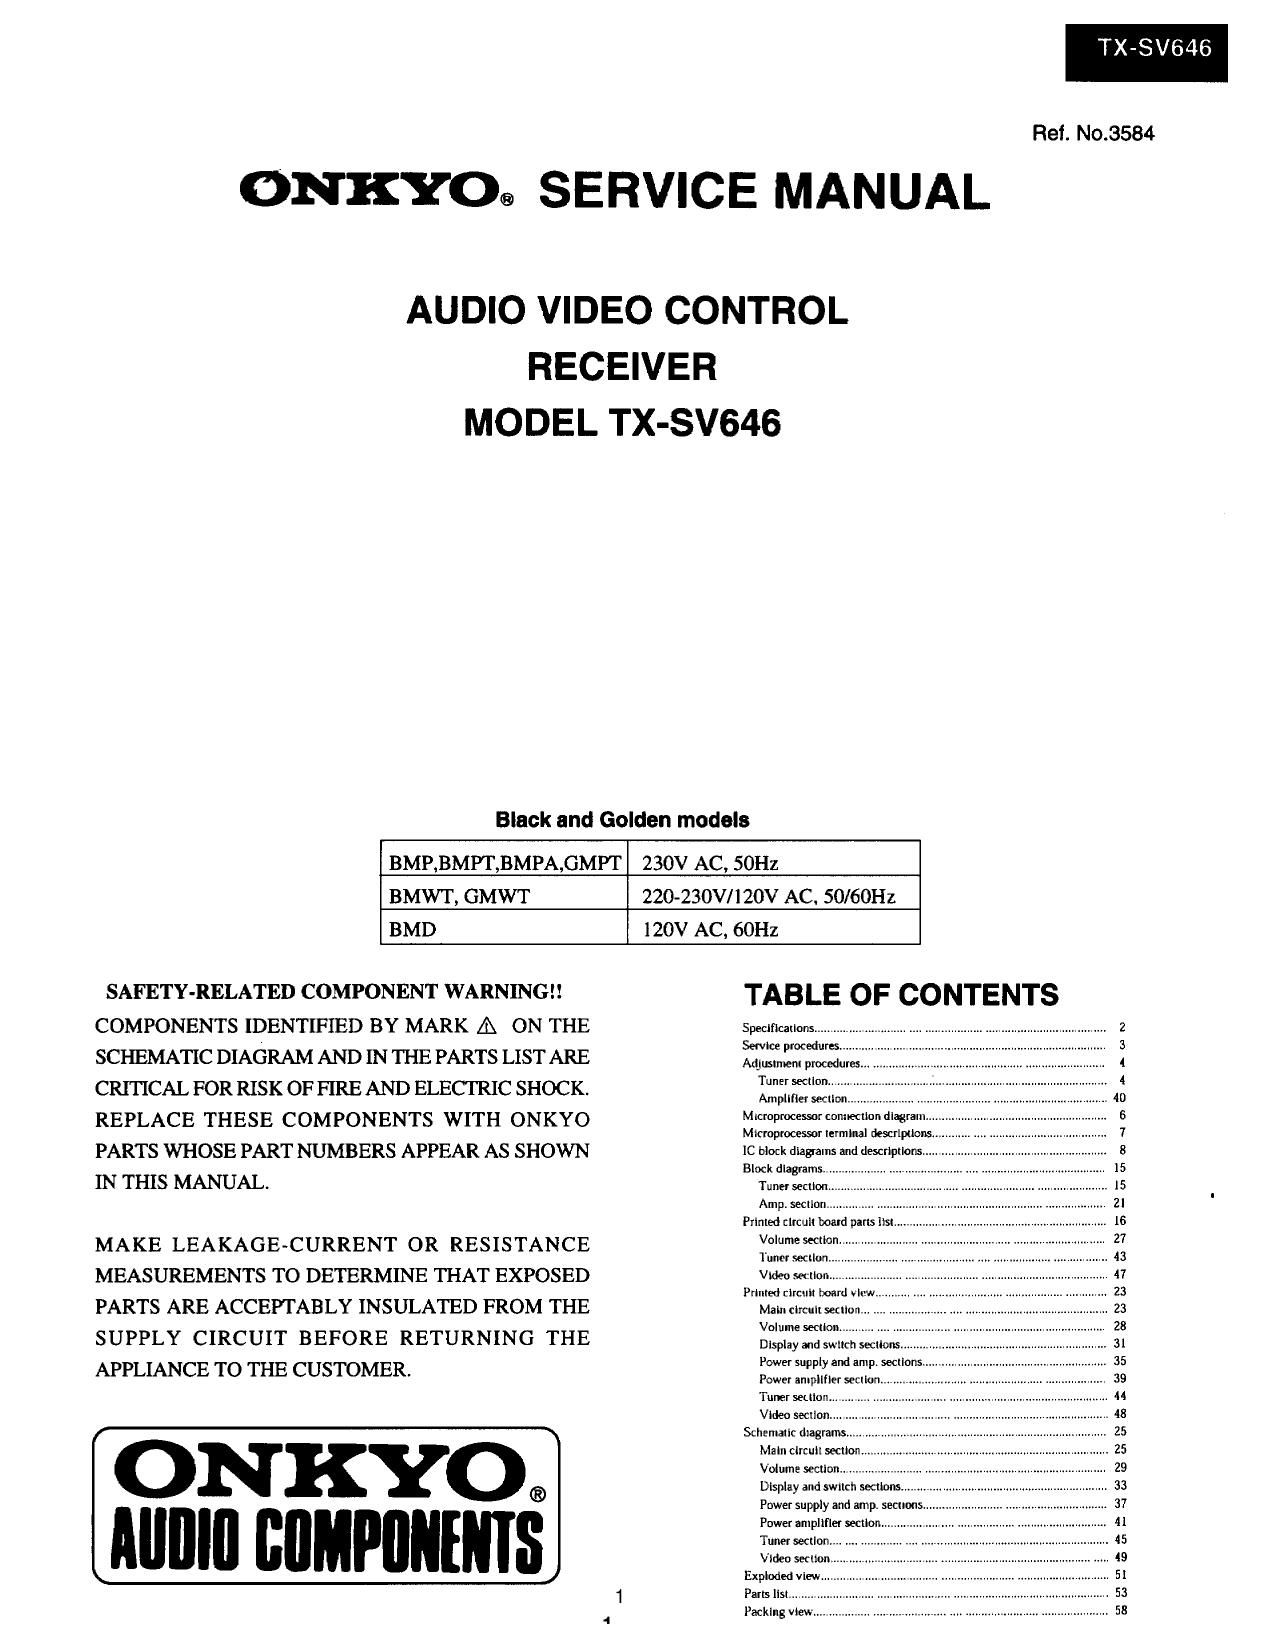 Onkyo TXSV 646 Service Manual